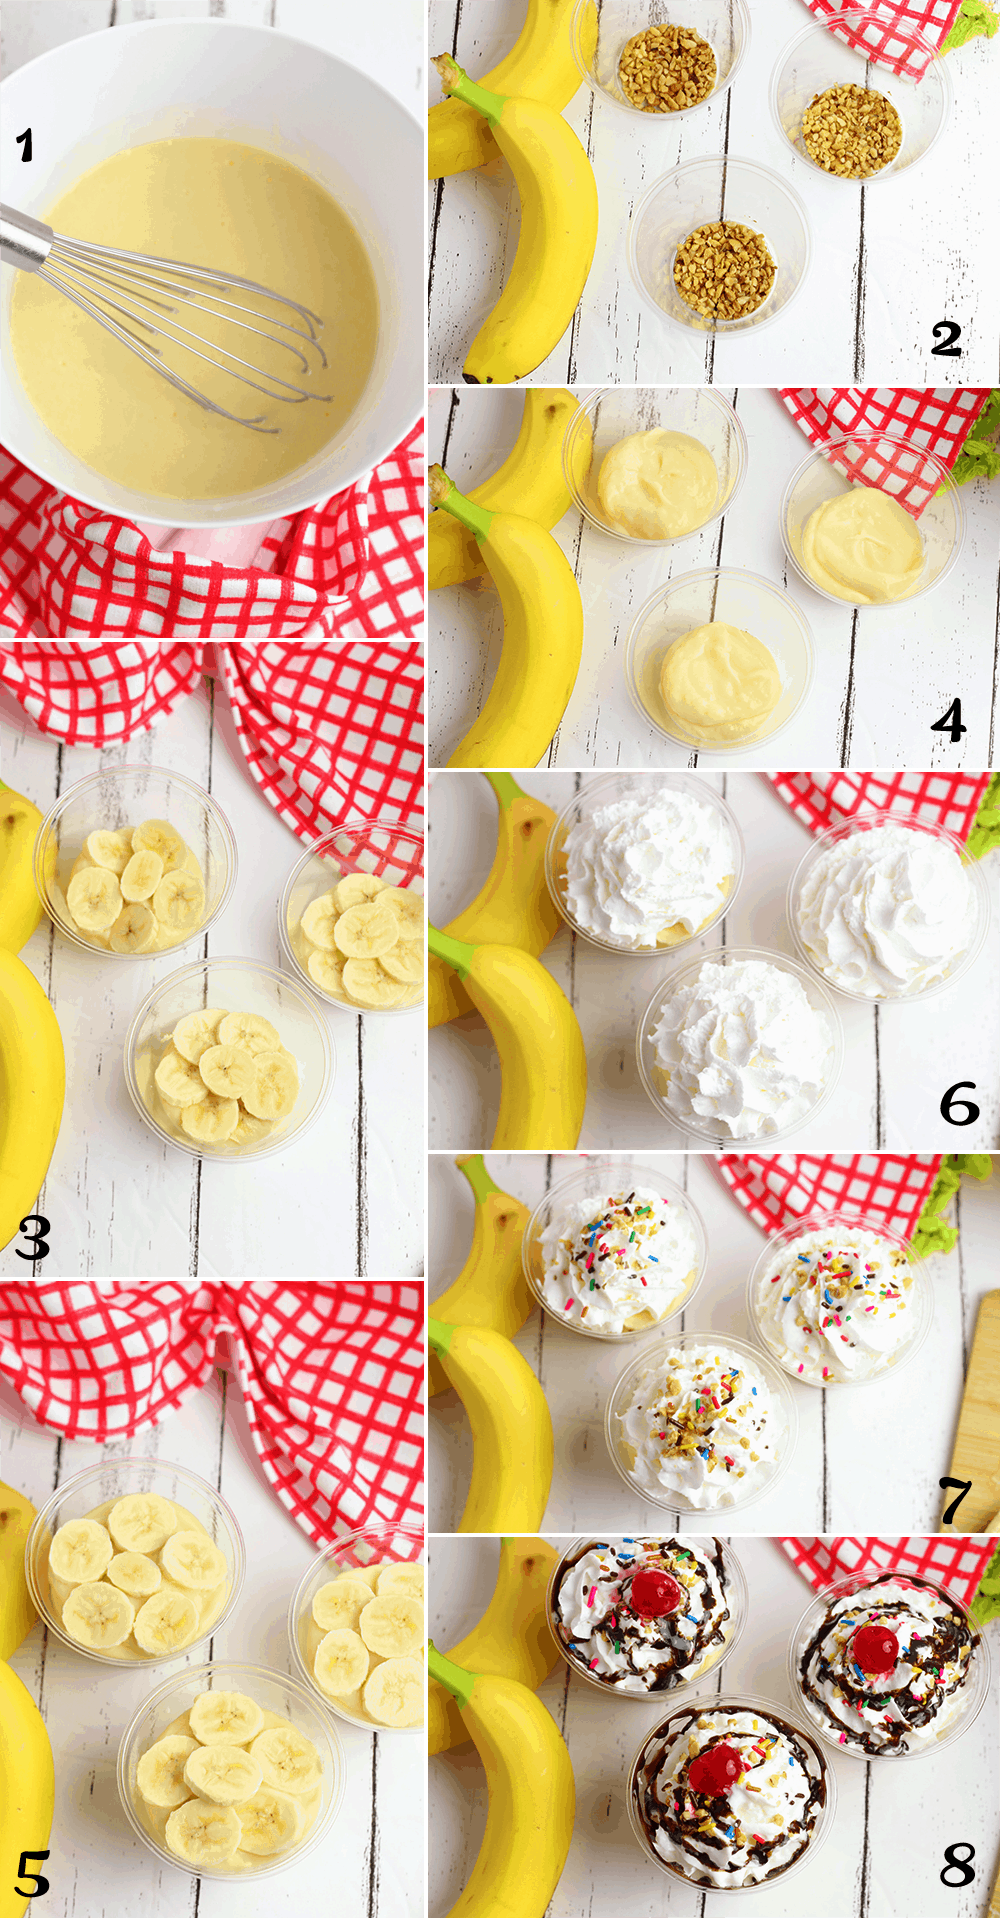 how to make banana split dessert